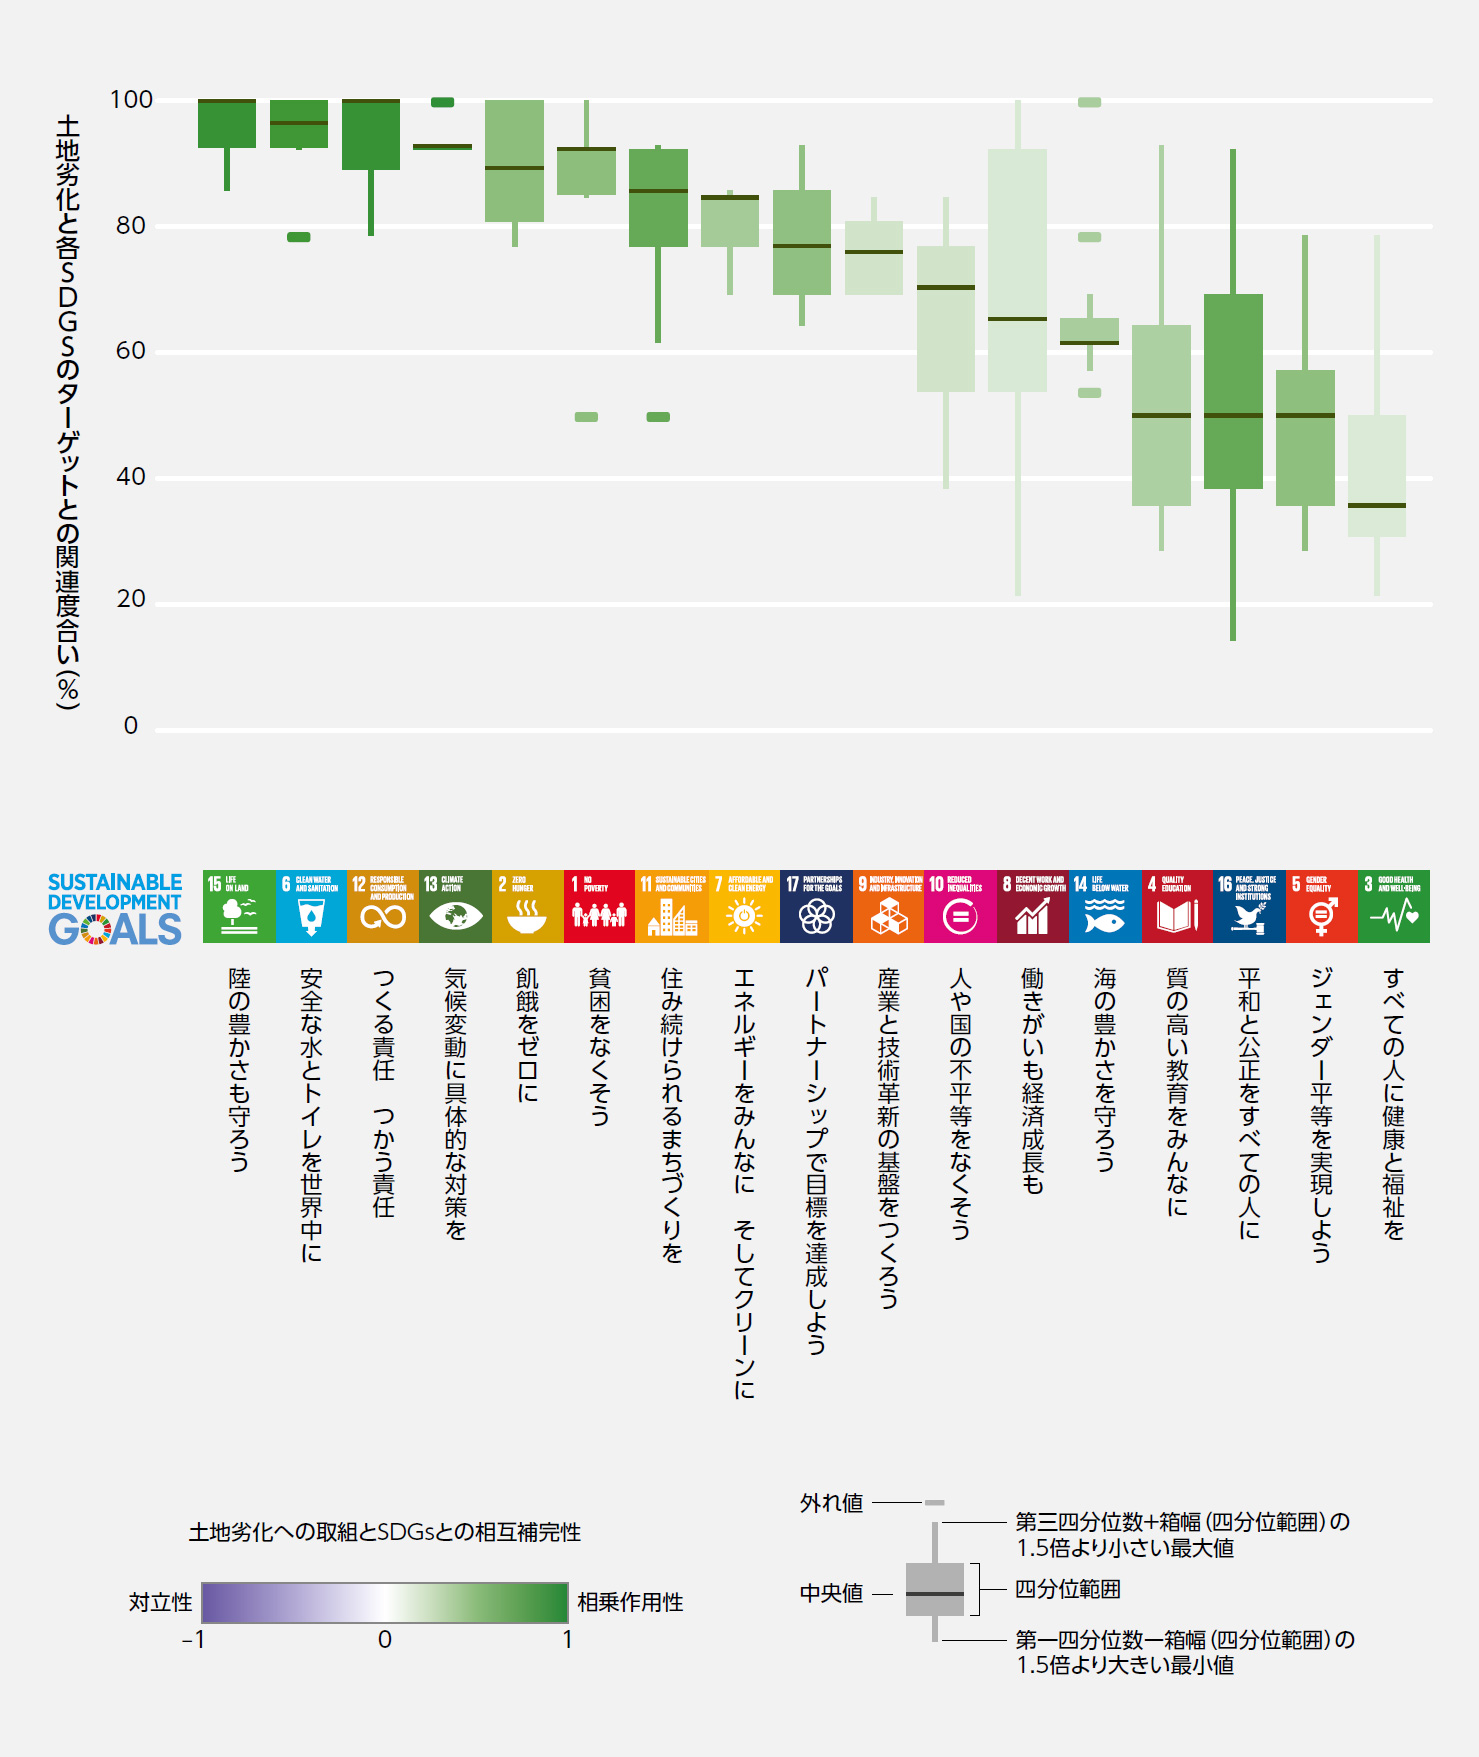 土地劣化と各SDGsのターゲットとの関連度合い（％）